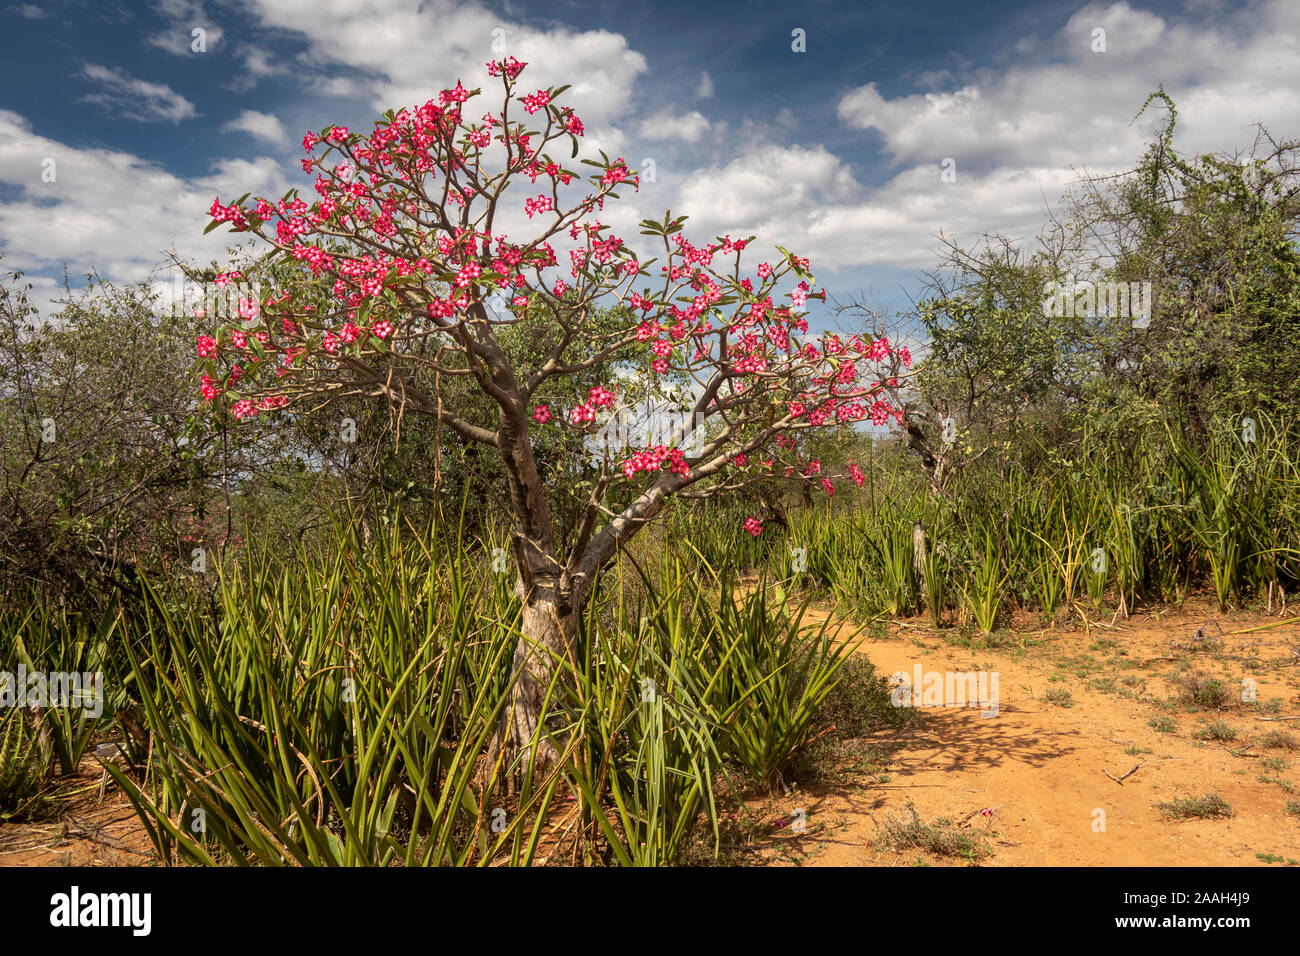 Ethiopia, South Omo, Turmi, pink desert rose Adenium obesum in flower Stock Photo